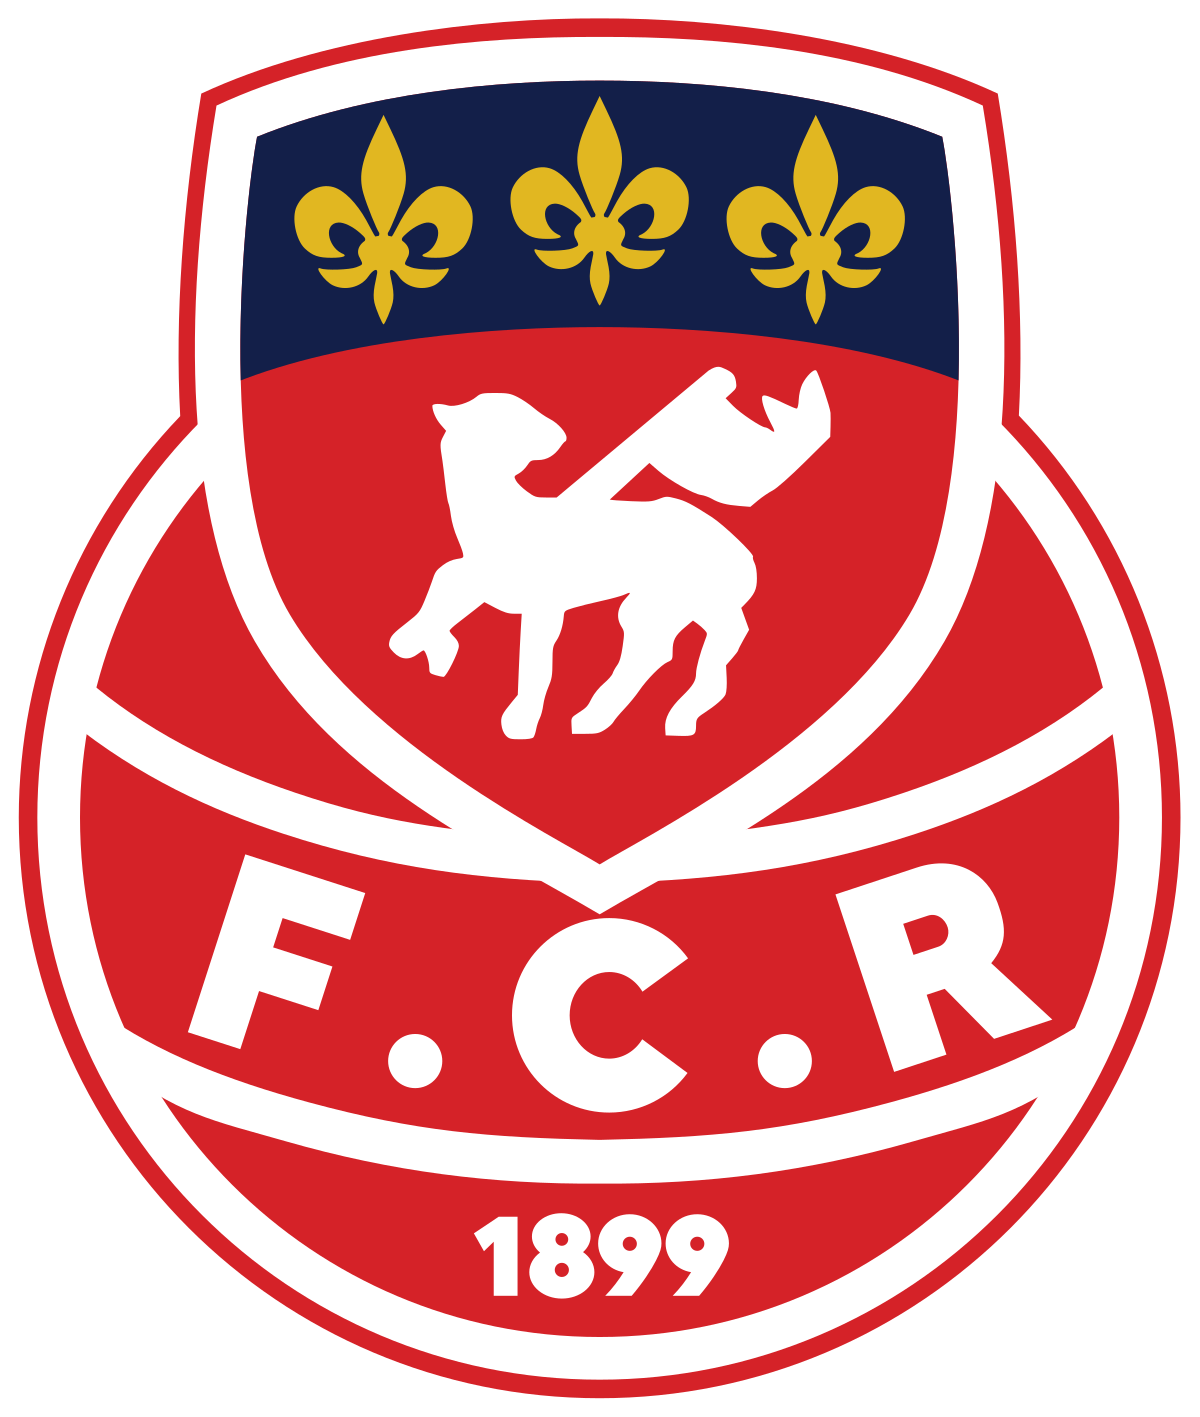 Football Club de Rouen